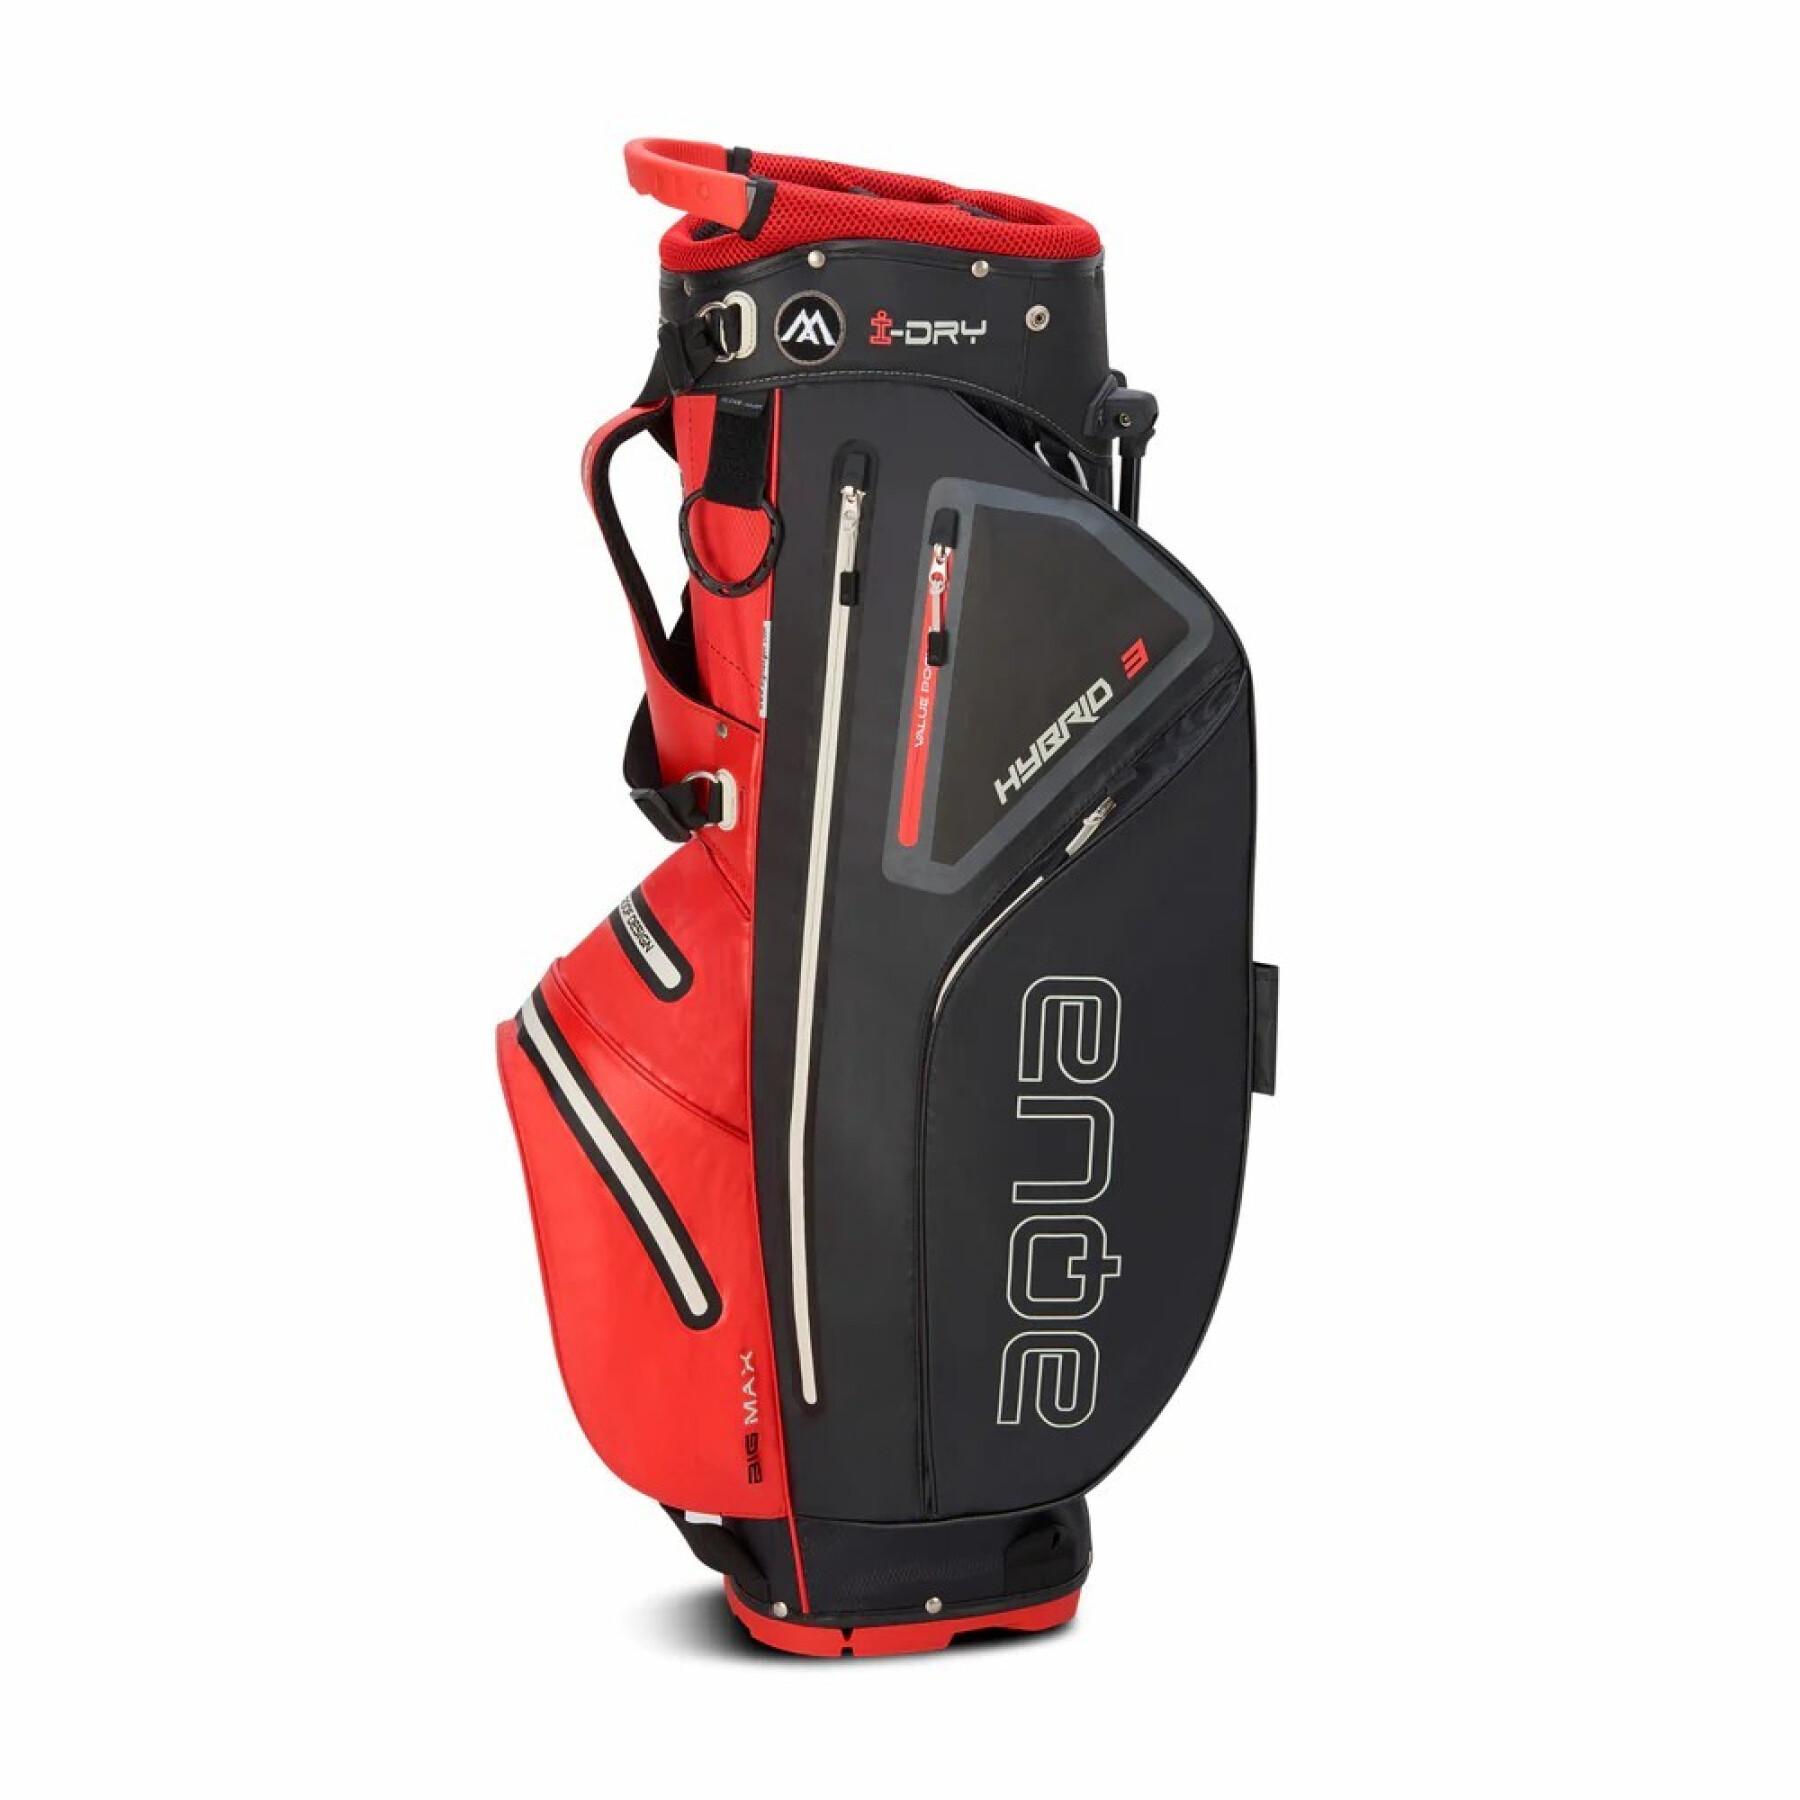 Golf bag Big Max Aqua Hybrid 3